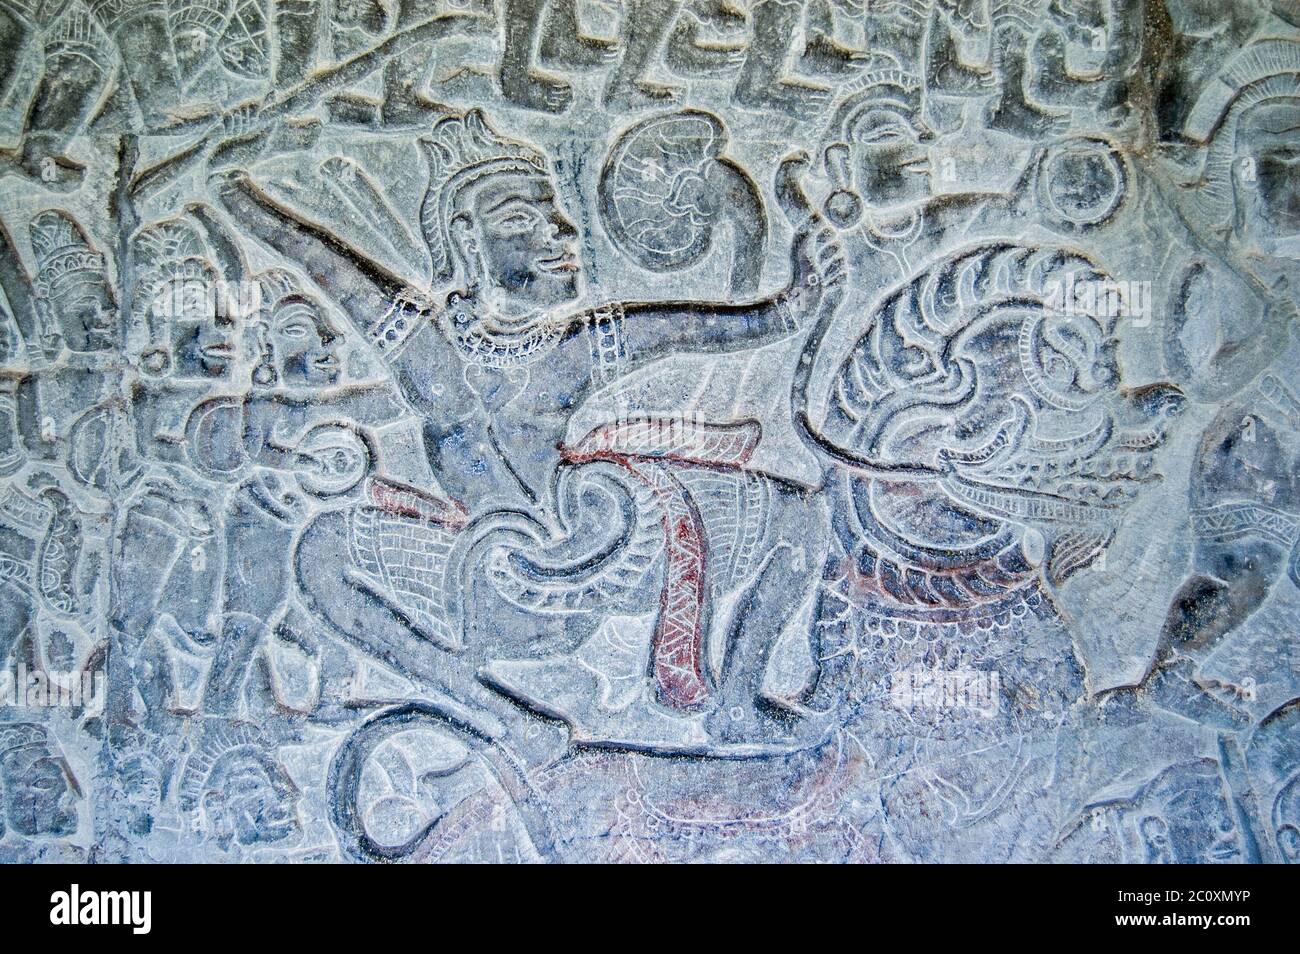 Un guerriero armato di spada in battaglia mentre cavalcano un leone cinese. Bassorilievo nel Vishnu e la galleria Asuras, tempio Angkor Wat, Siem R. Foto Stock